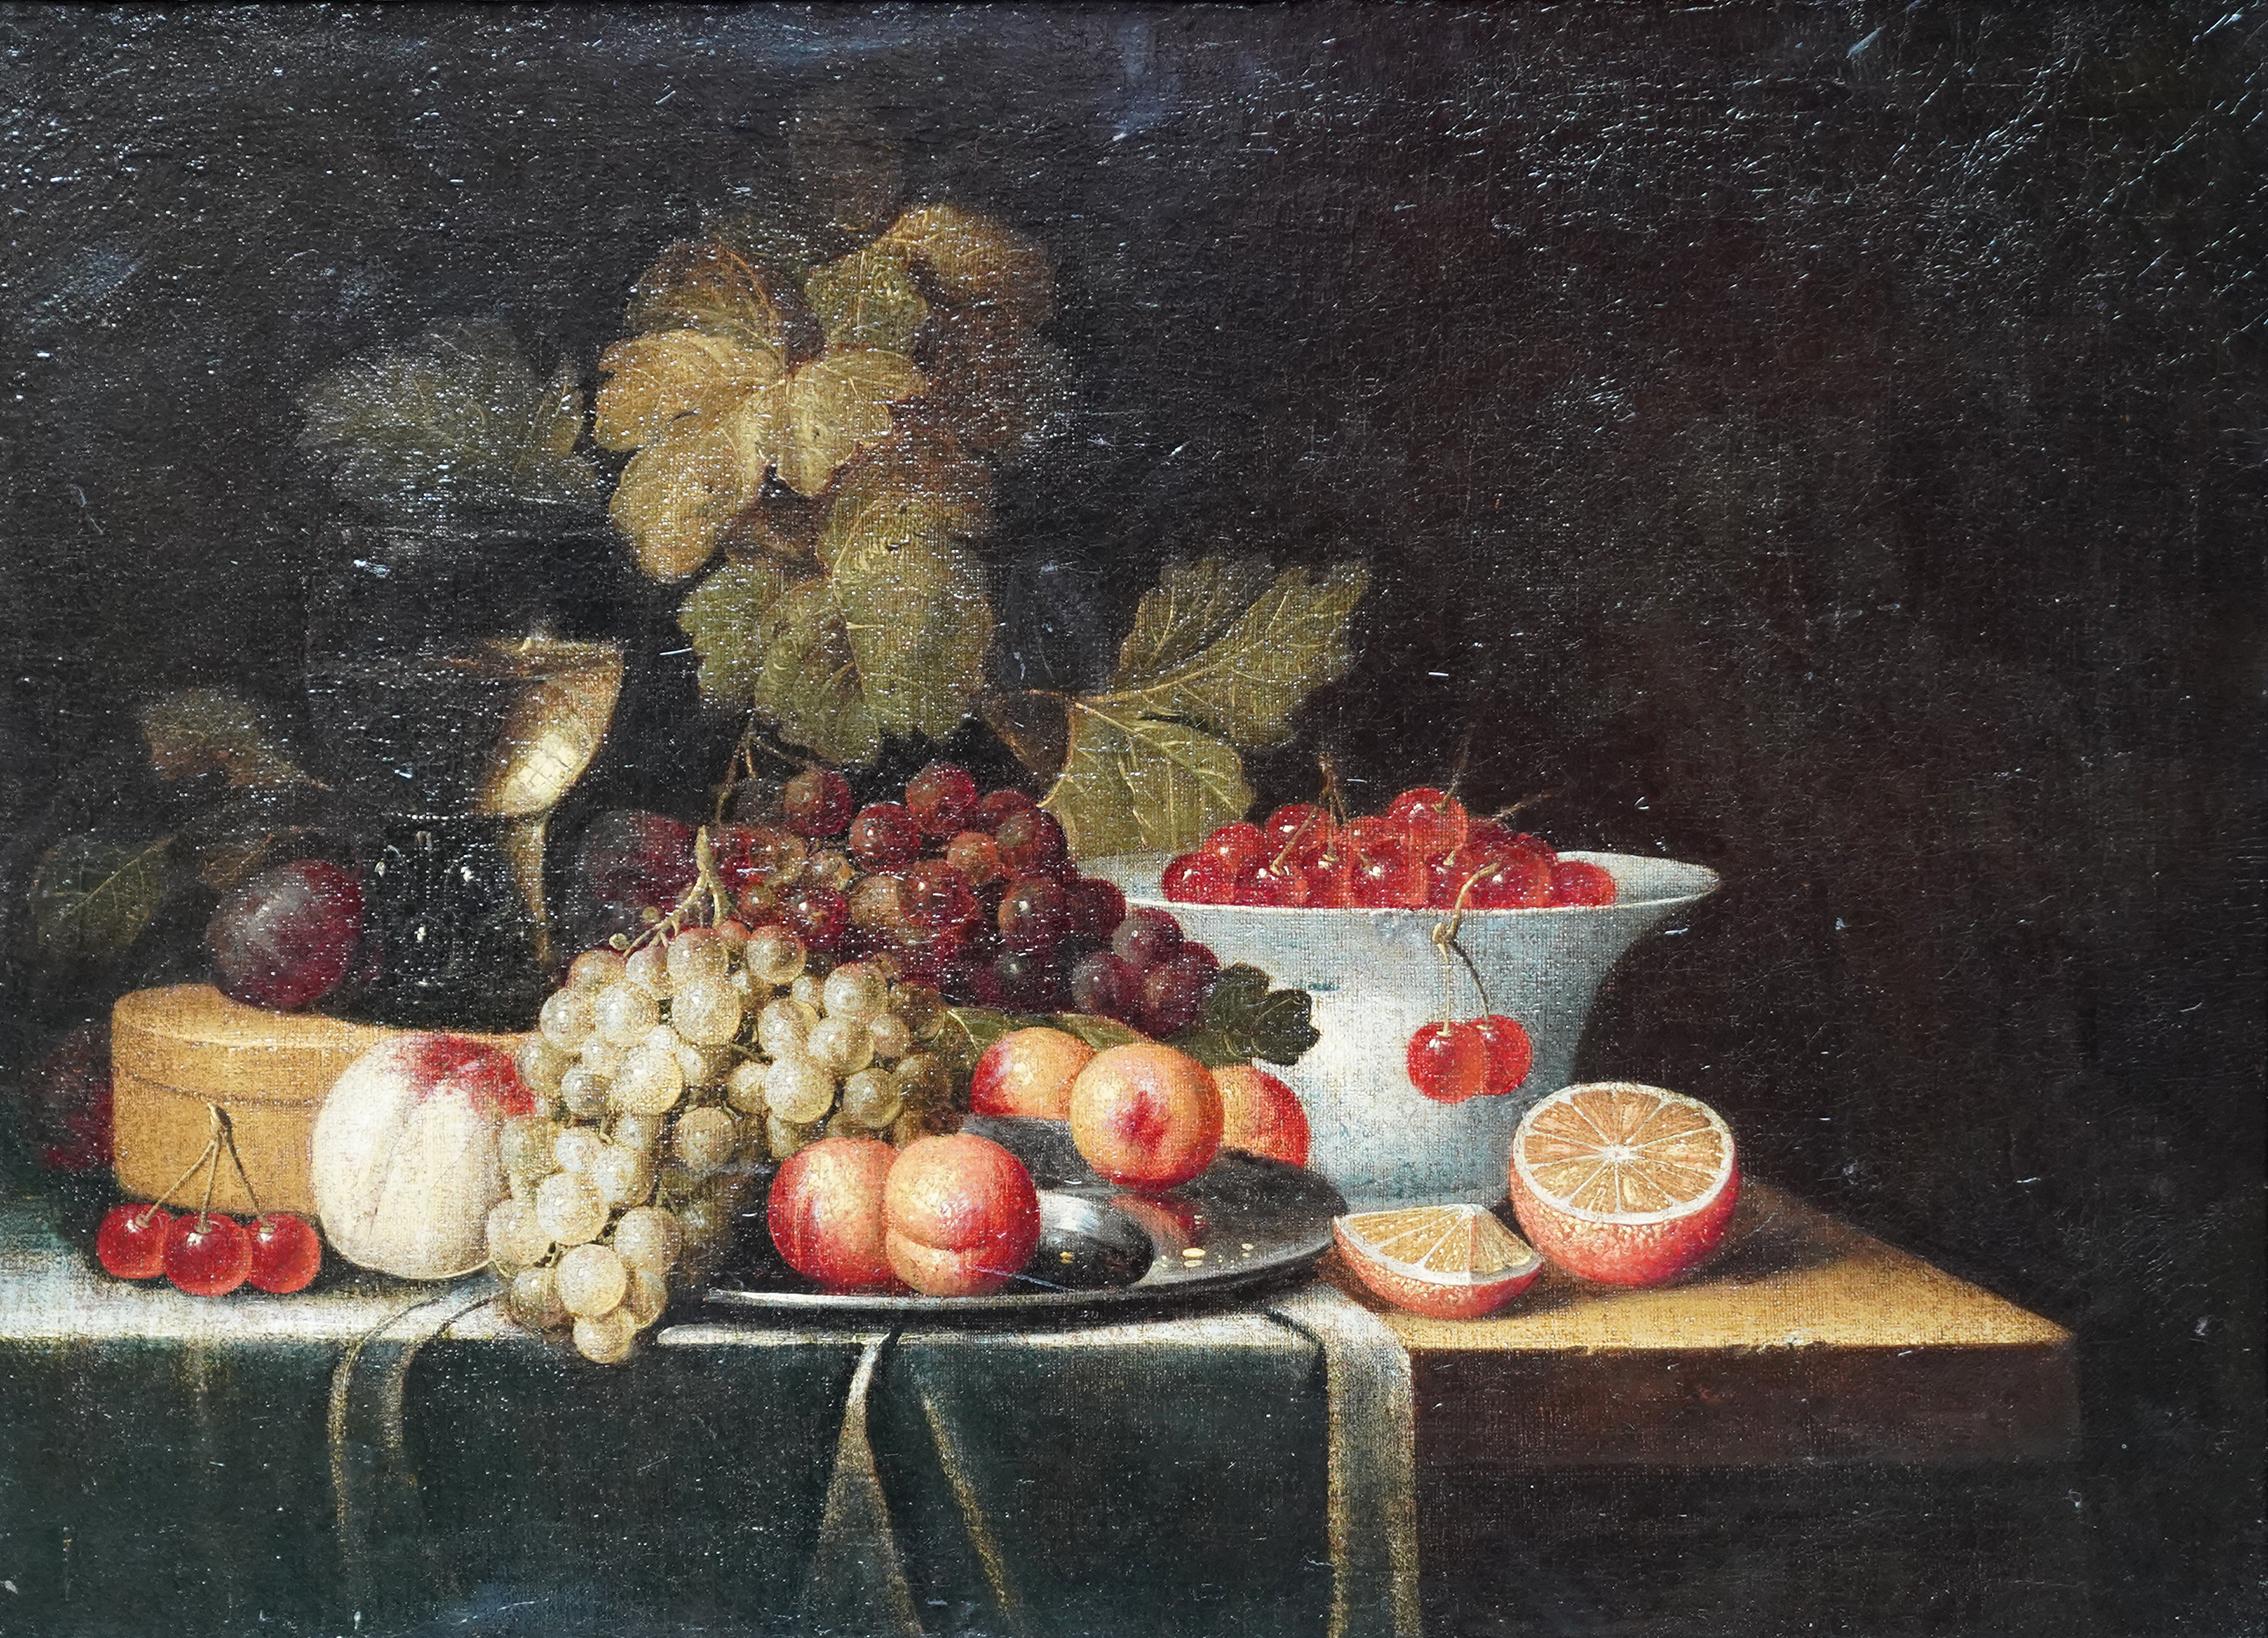 Stillleben mit Früchten – niederländische Kunst des 17. Jahrhunderts, Ölgemälde eines alten Meisters – Painting von Jan Davidsz De Heem